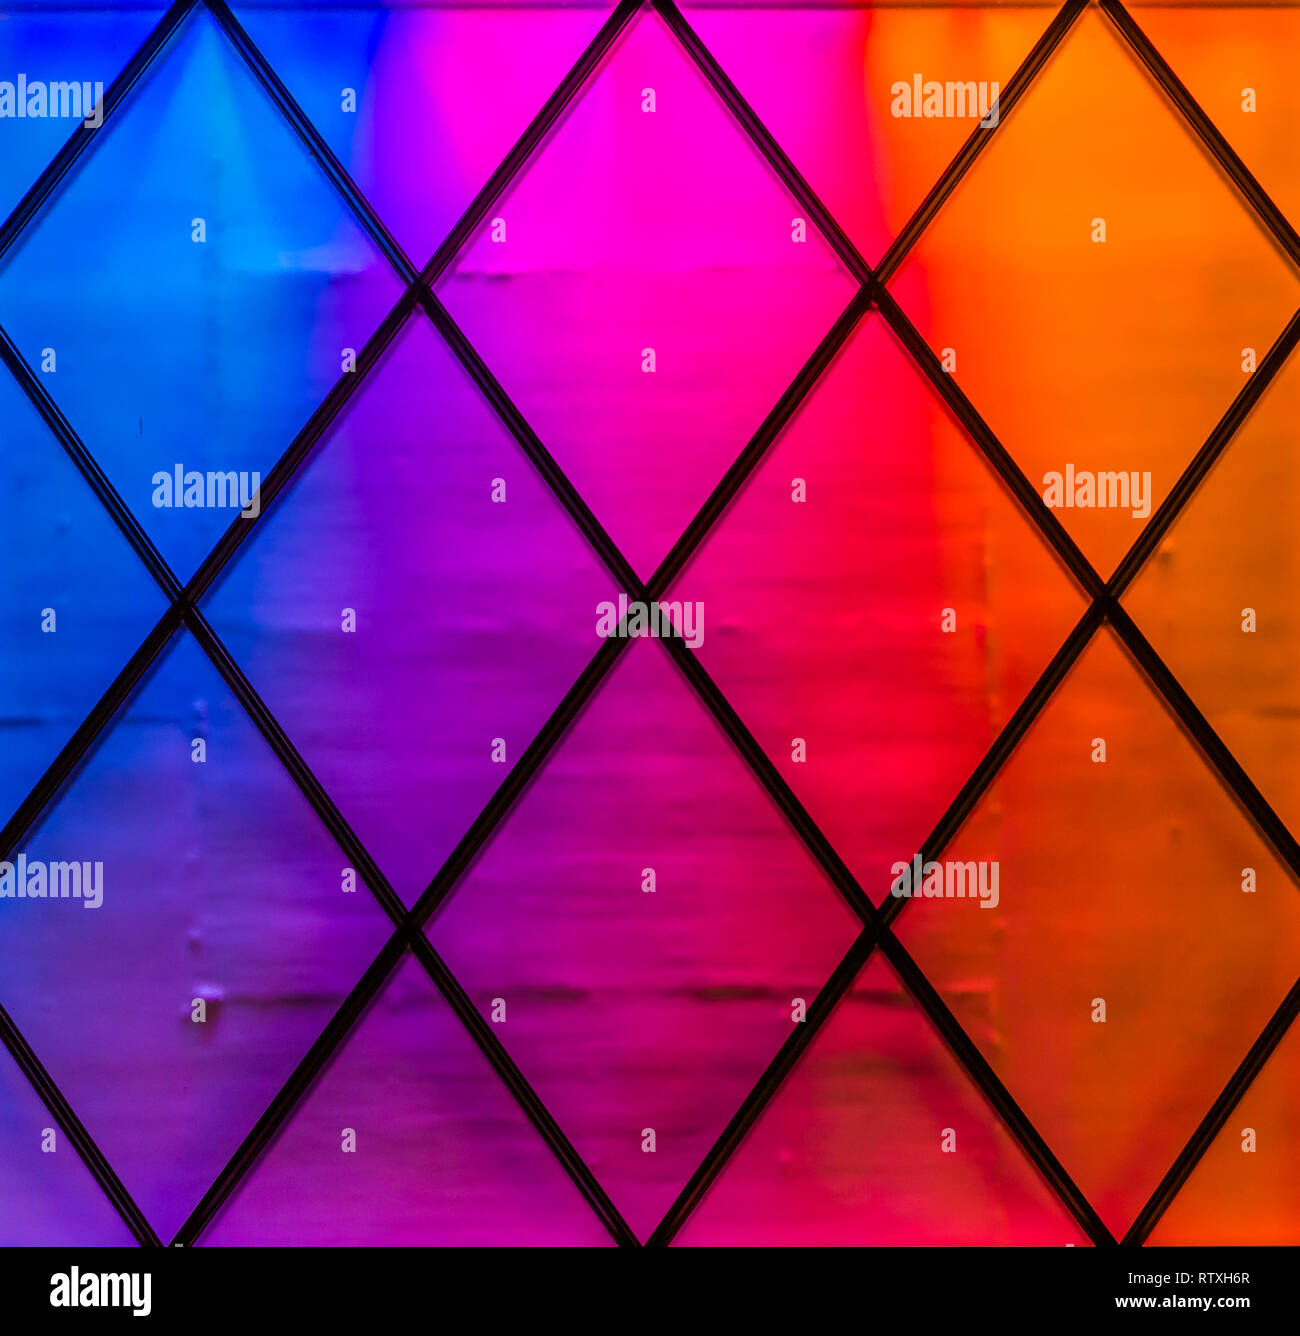 Moderne Und Bunte Lichter In Den Farben Blau Lila Rosa Rot Und Orange Rautenmuster Neonlicht Hintergrund Stockfotografie Alamy